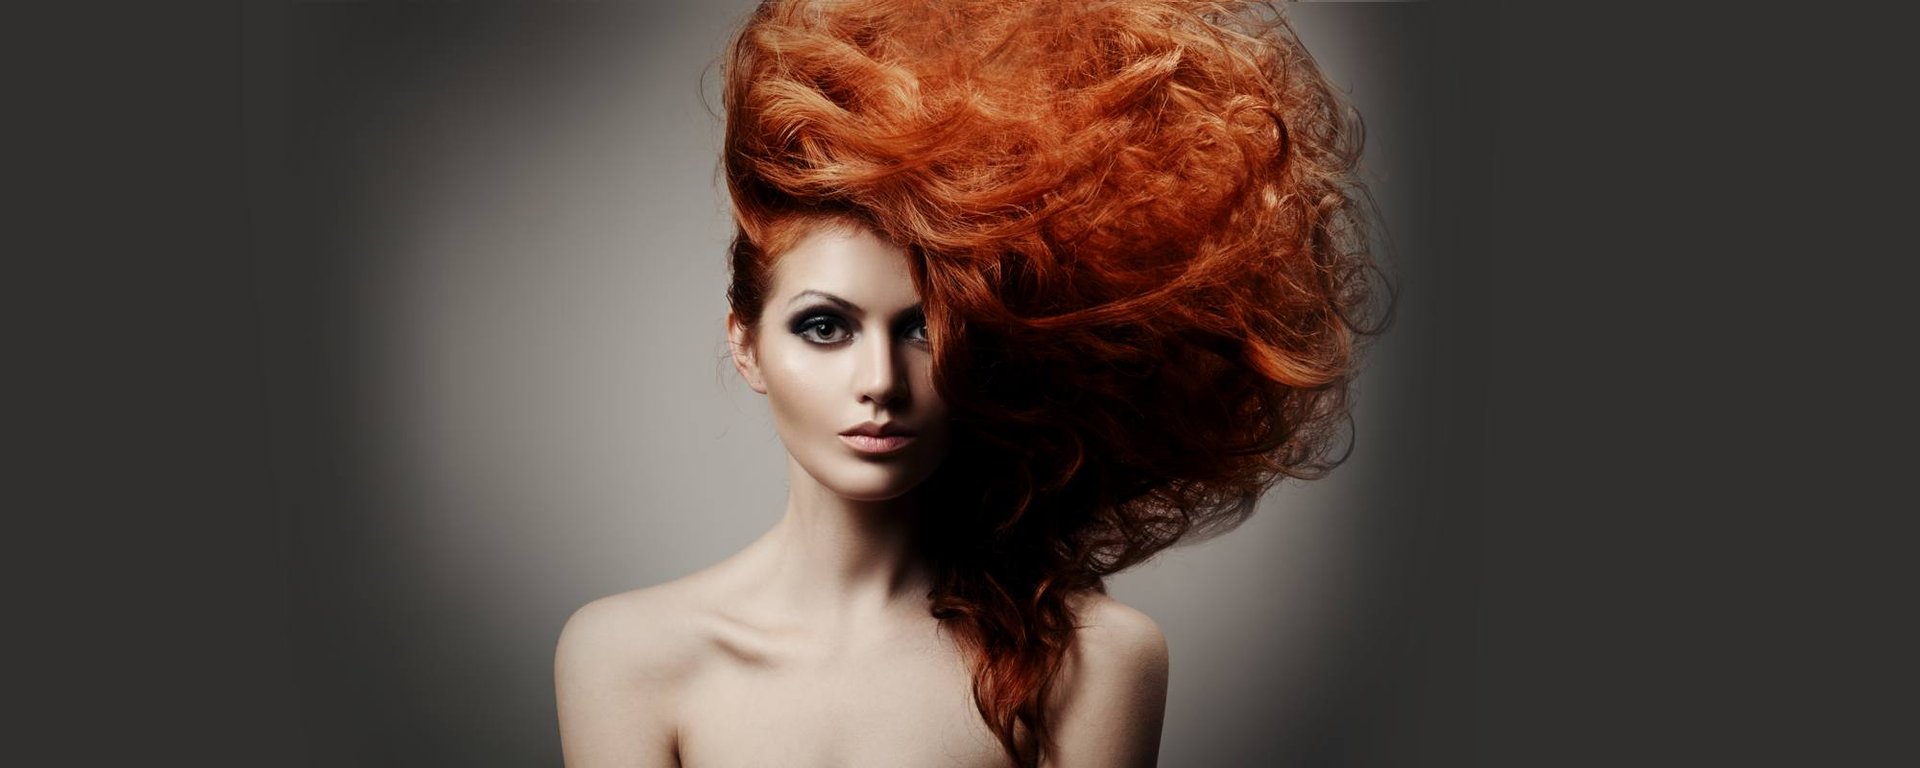 Рыжий цвет волос [кому подходит] - обзор красок L'Oréal и пошаговая техника окрашивания